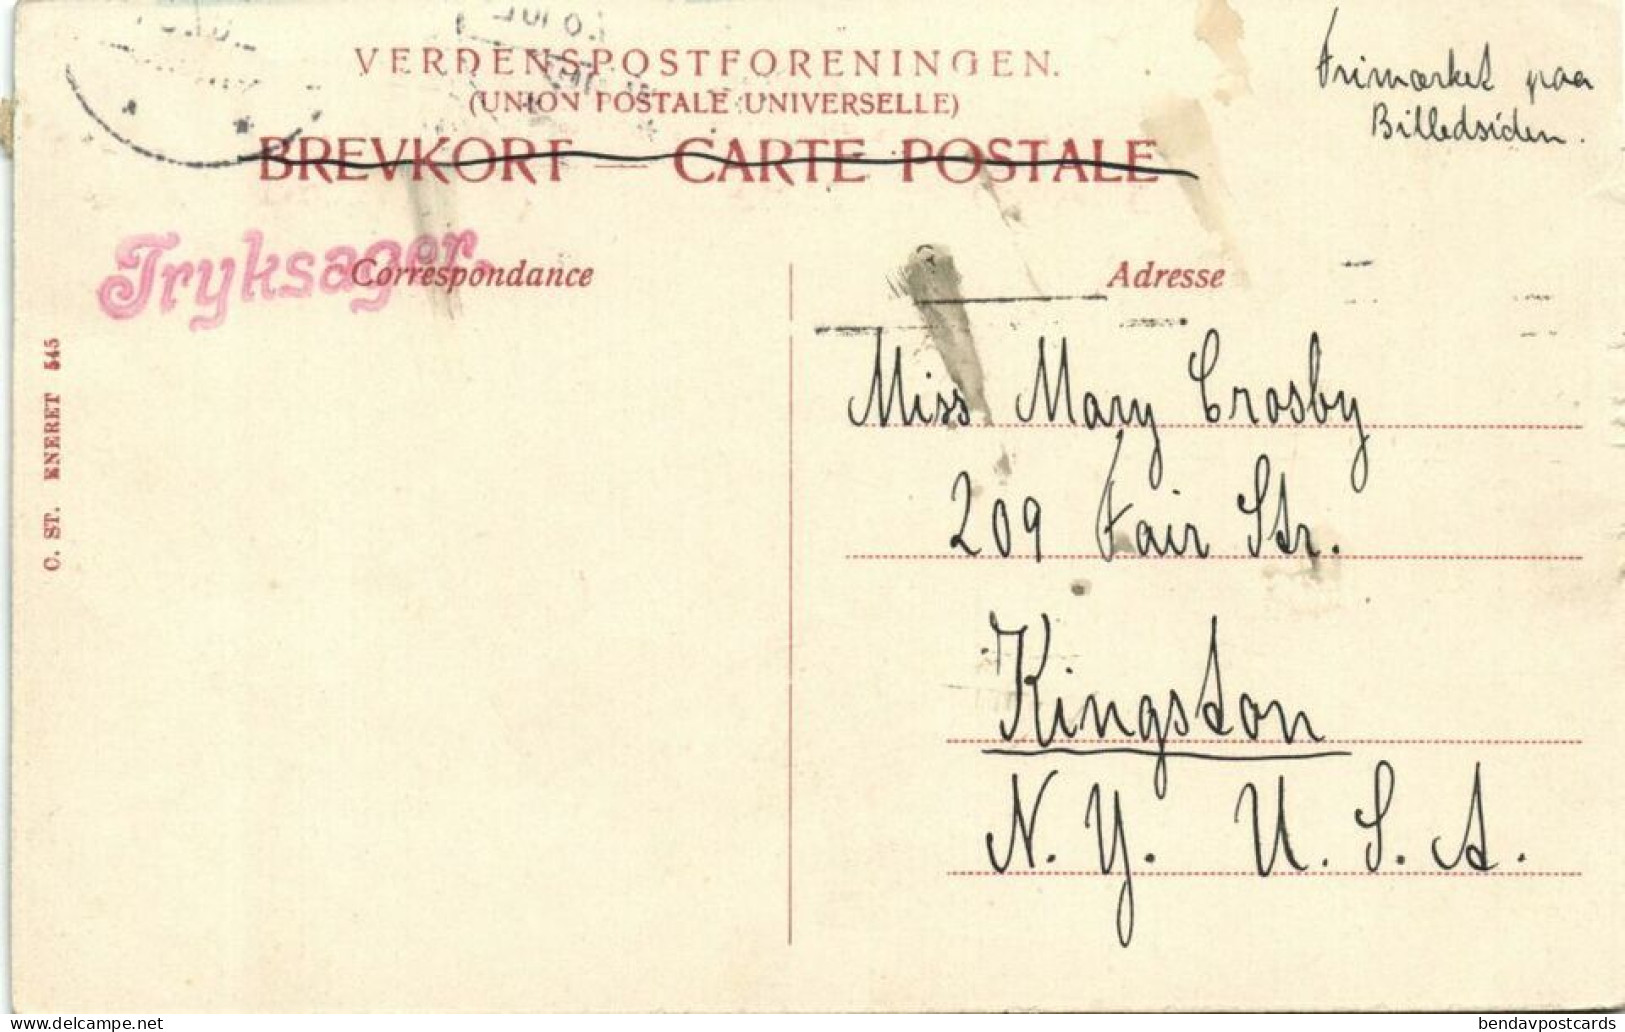 Denmark, AARHUS ÅRHUS, Marselisborg Slot, Palace (1907) Postcard - Danemark